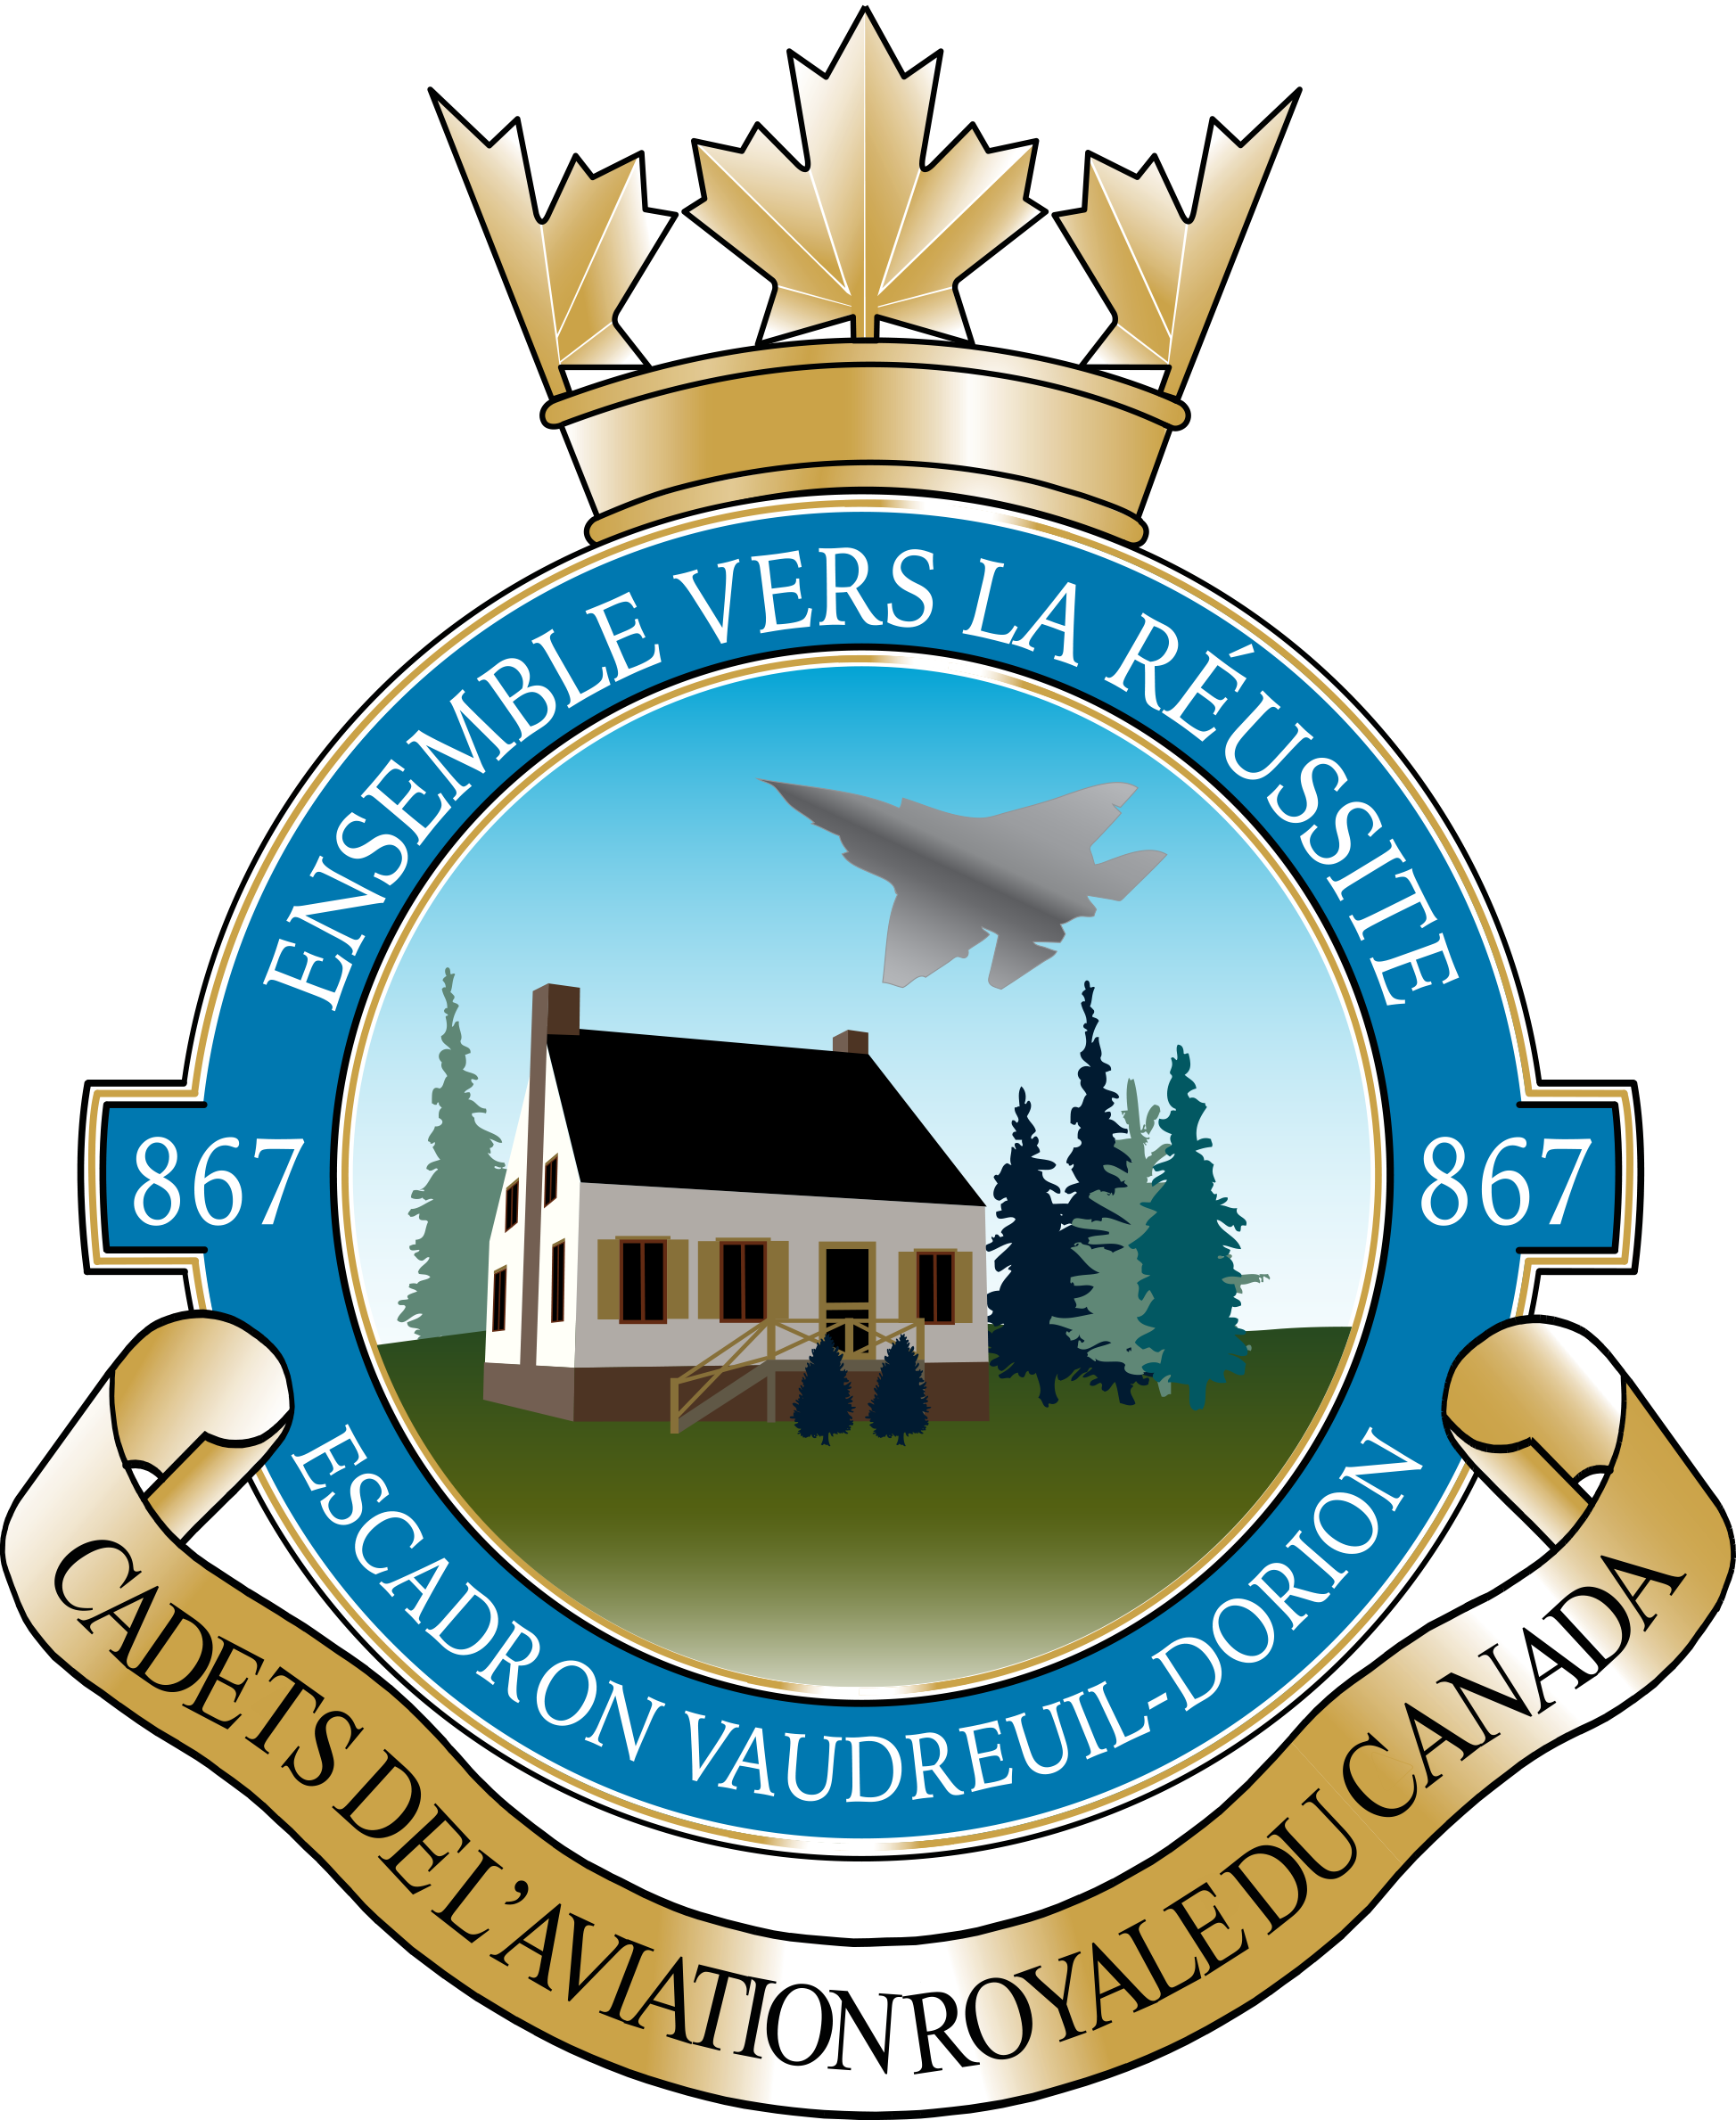 Escadron 867 Vaudreuil-Dorion Squadron